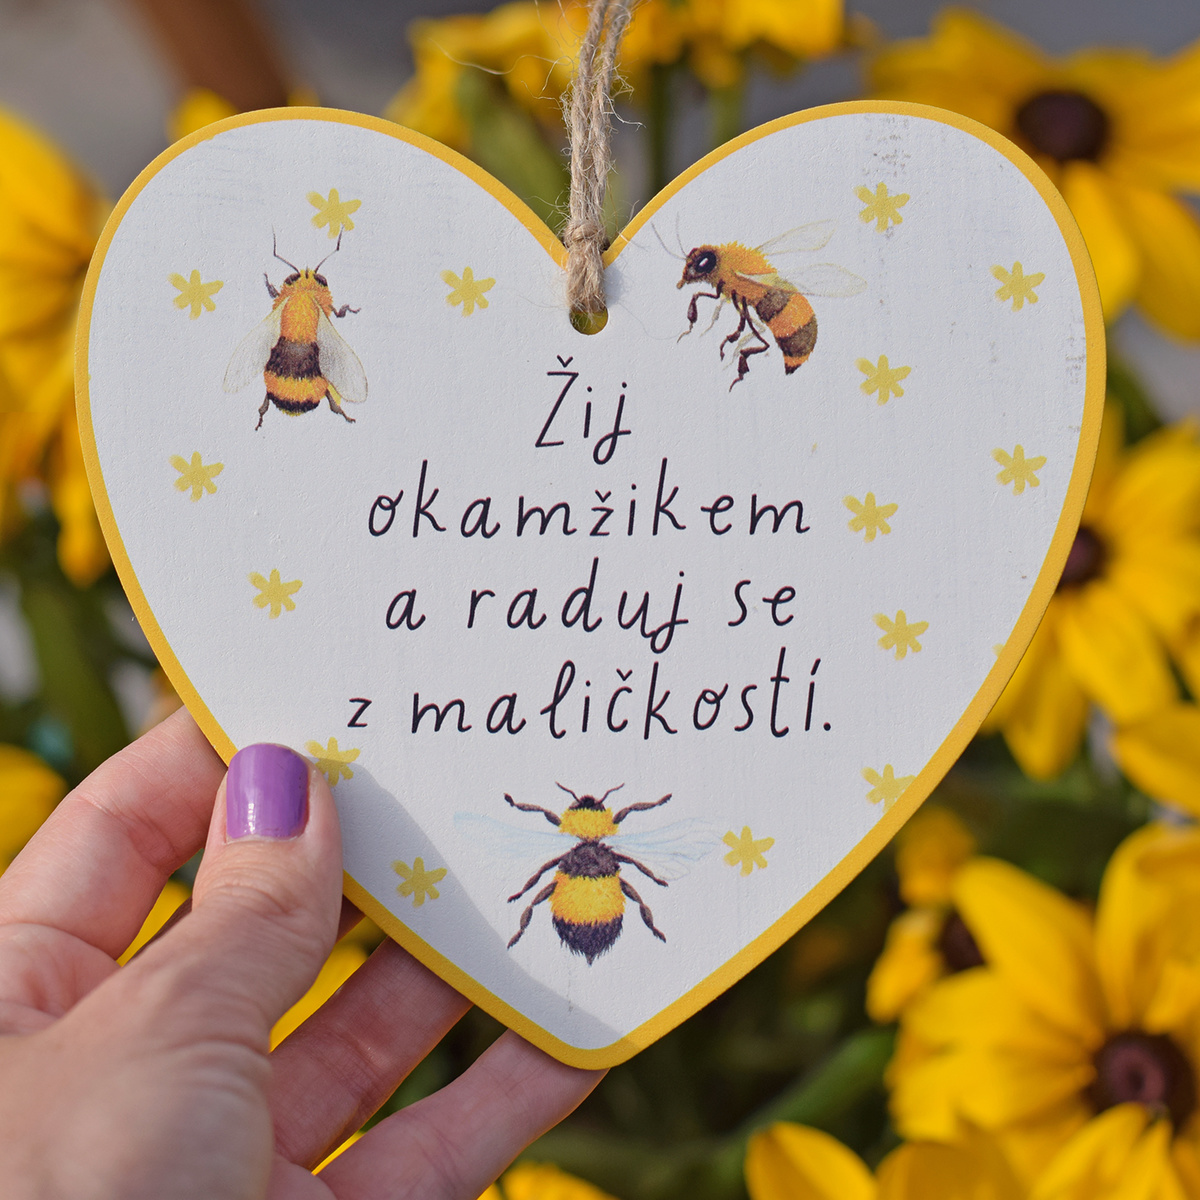 Včelí srdíčko - Žij okamžikem a raduj se z maličkostí.